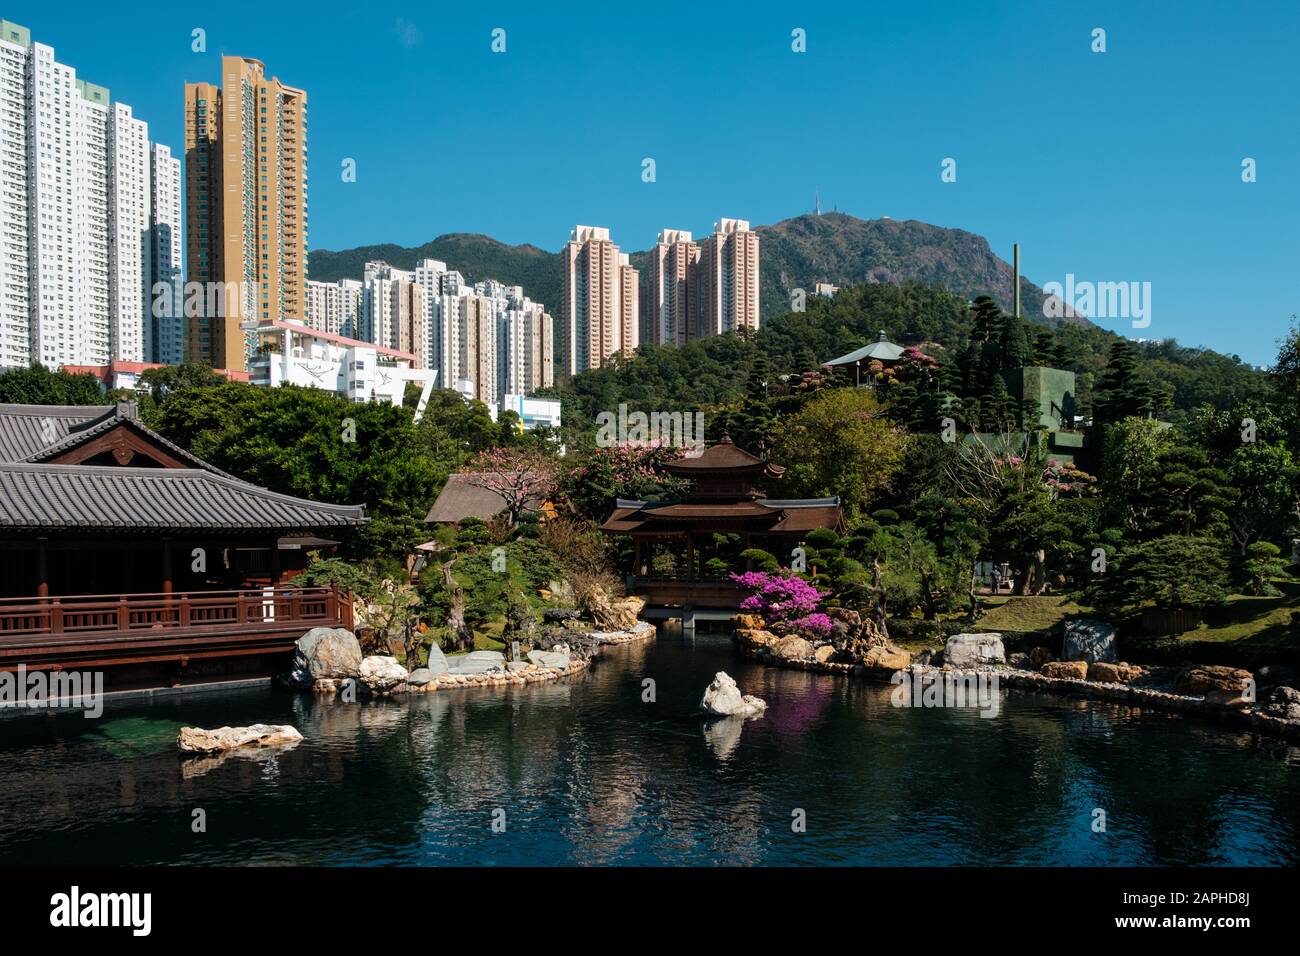 HongKong, China - November, 2019: The Nan Lian Garden in Hong Kong Stock Photo